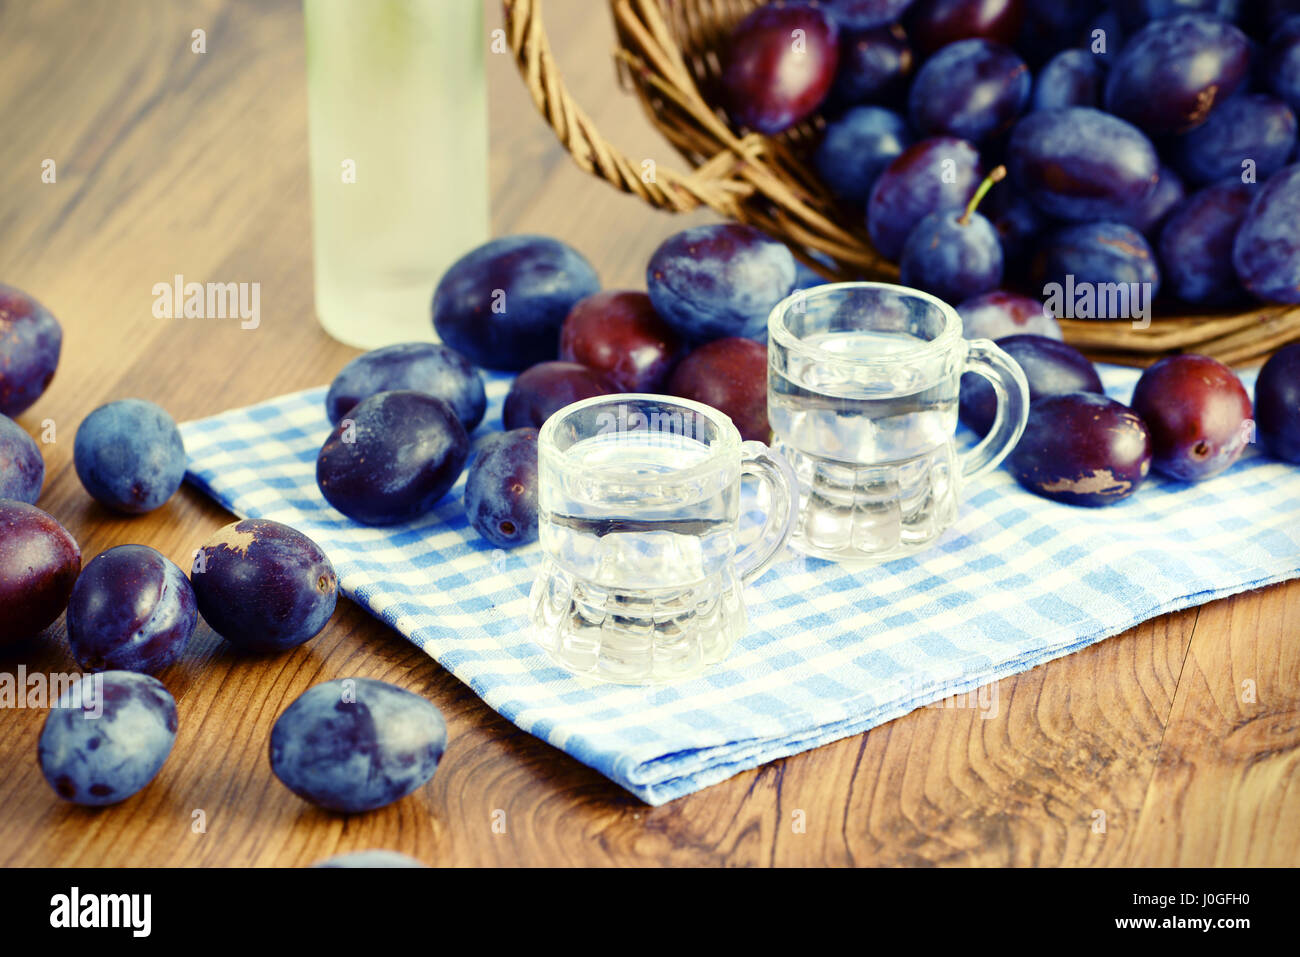 Liqupr prune servi dans de petits verres. contre-image traitée. Banque D'Images